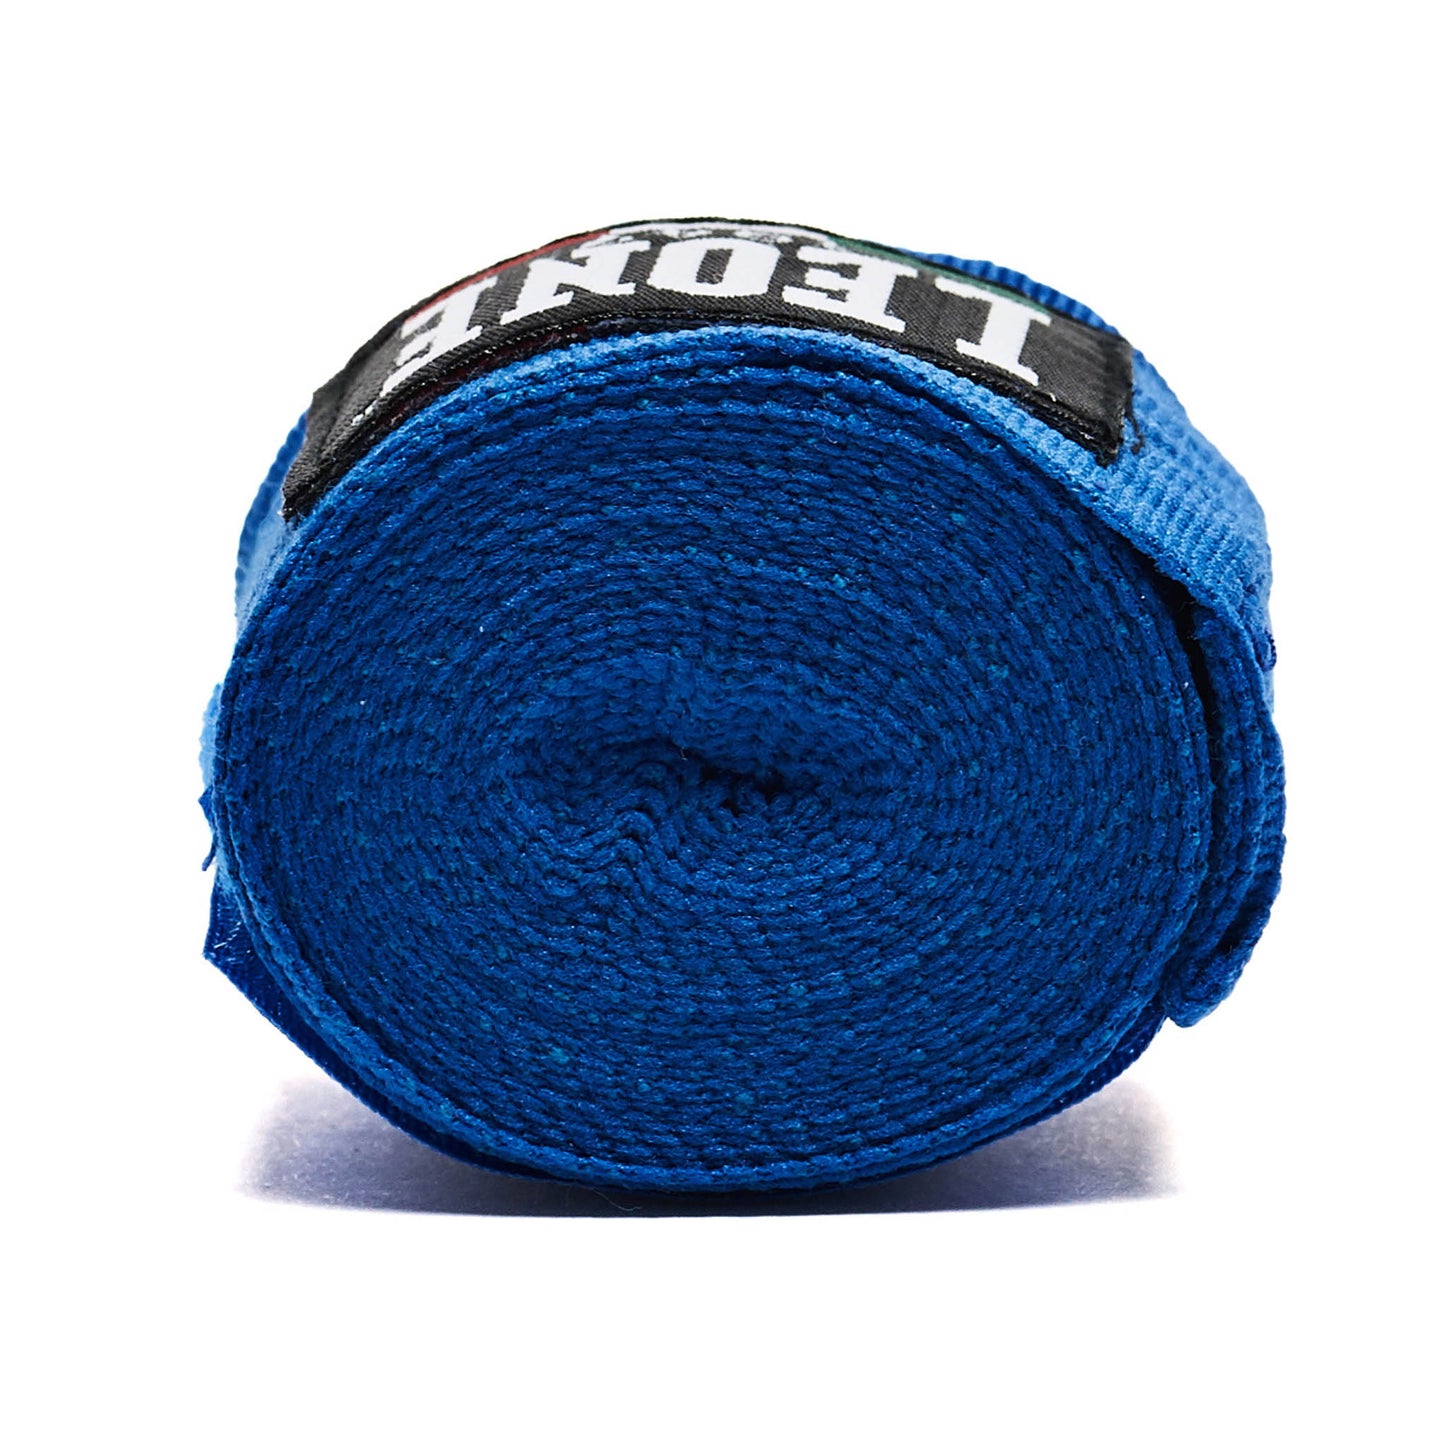 Bandages de boxe Leone Texture - Bleu - 4,5m